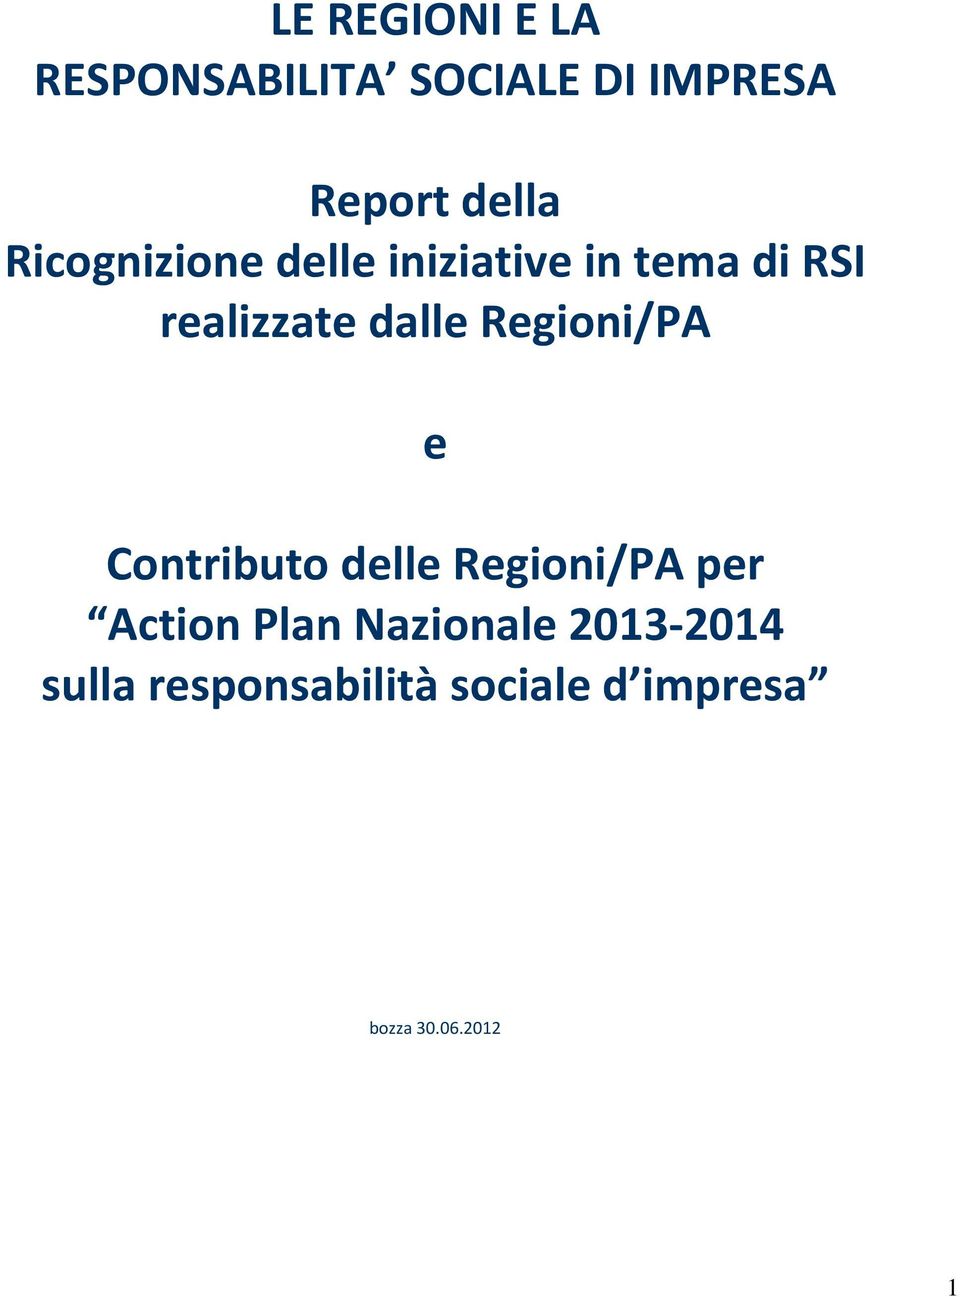 Regioni/PA e Contributo delle Regioni/PA per Action Plan